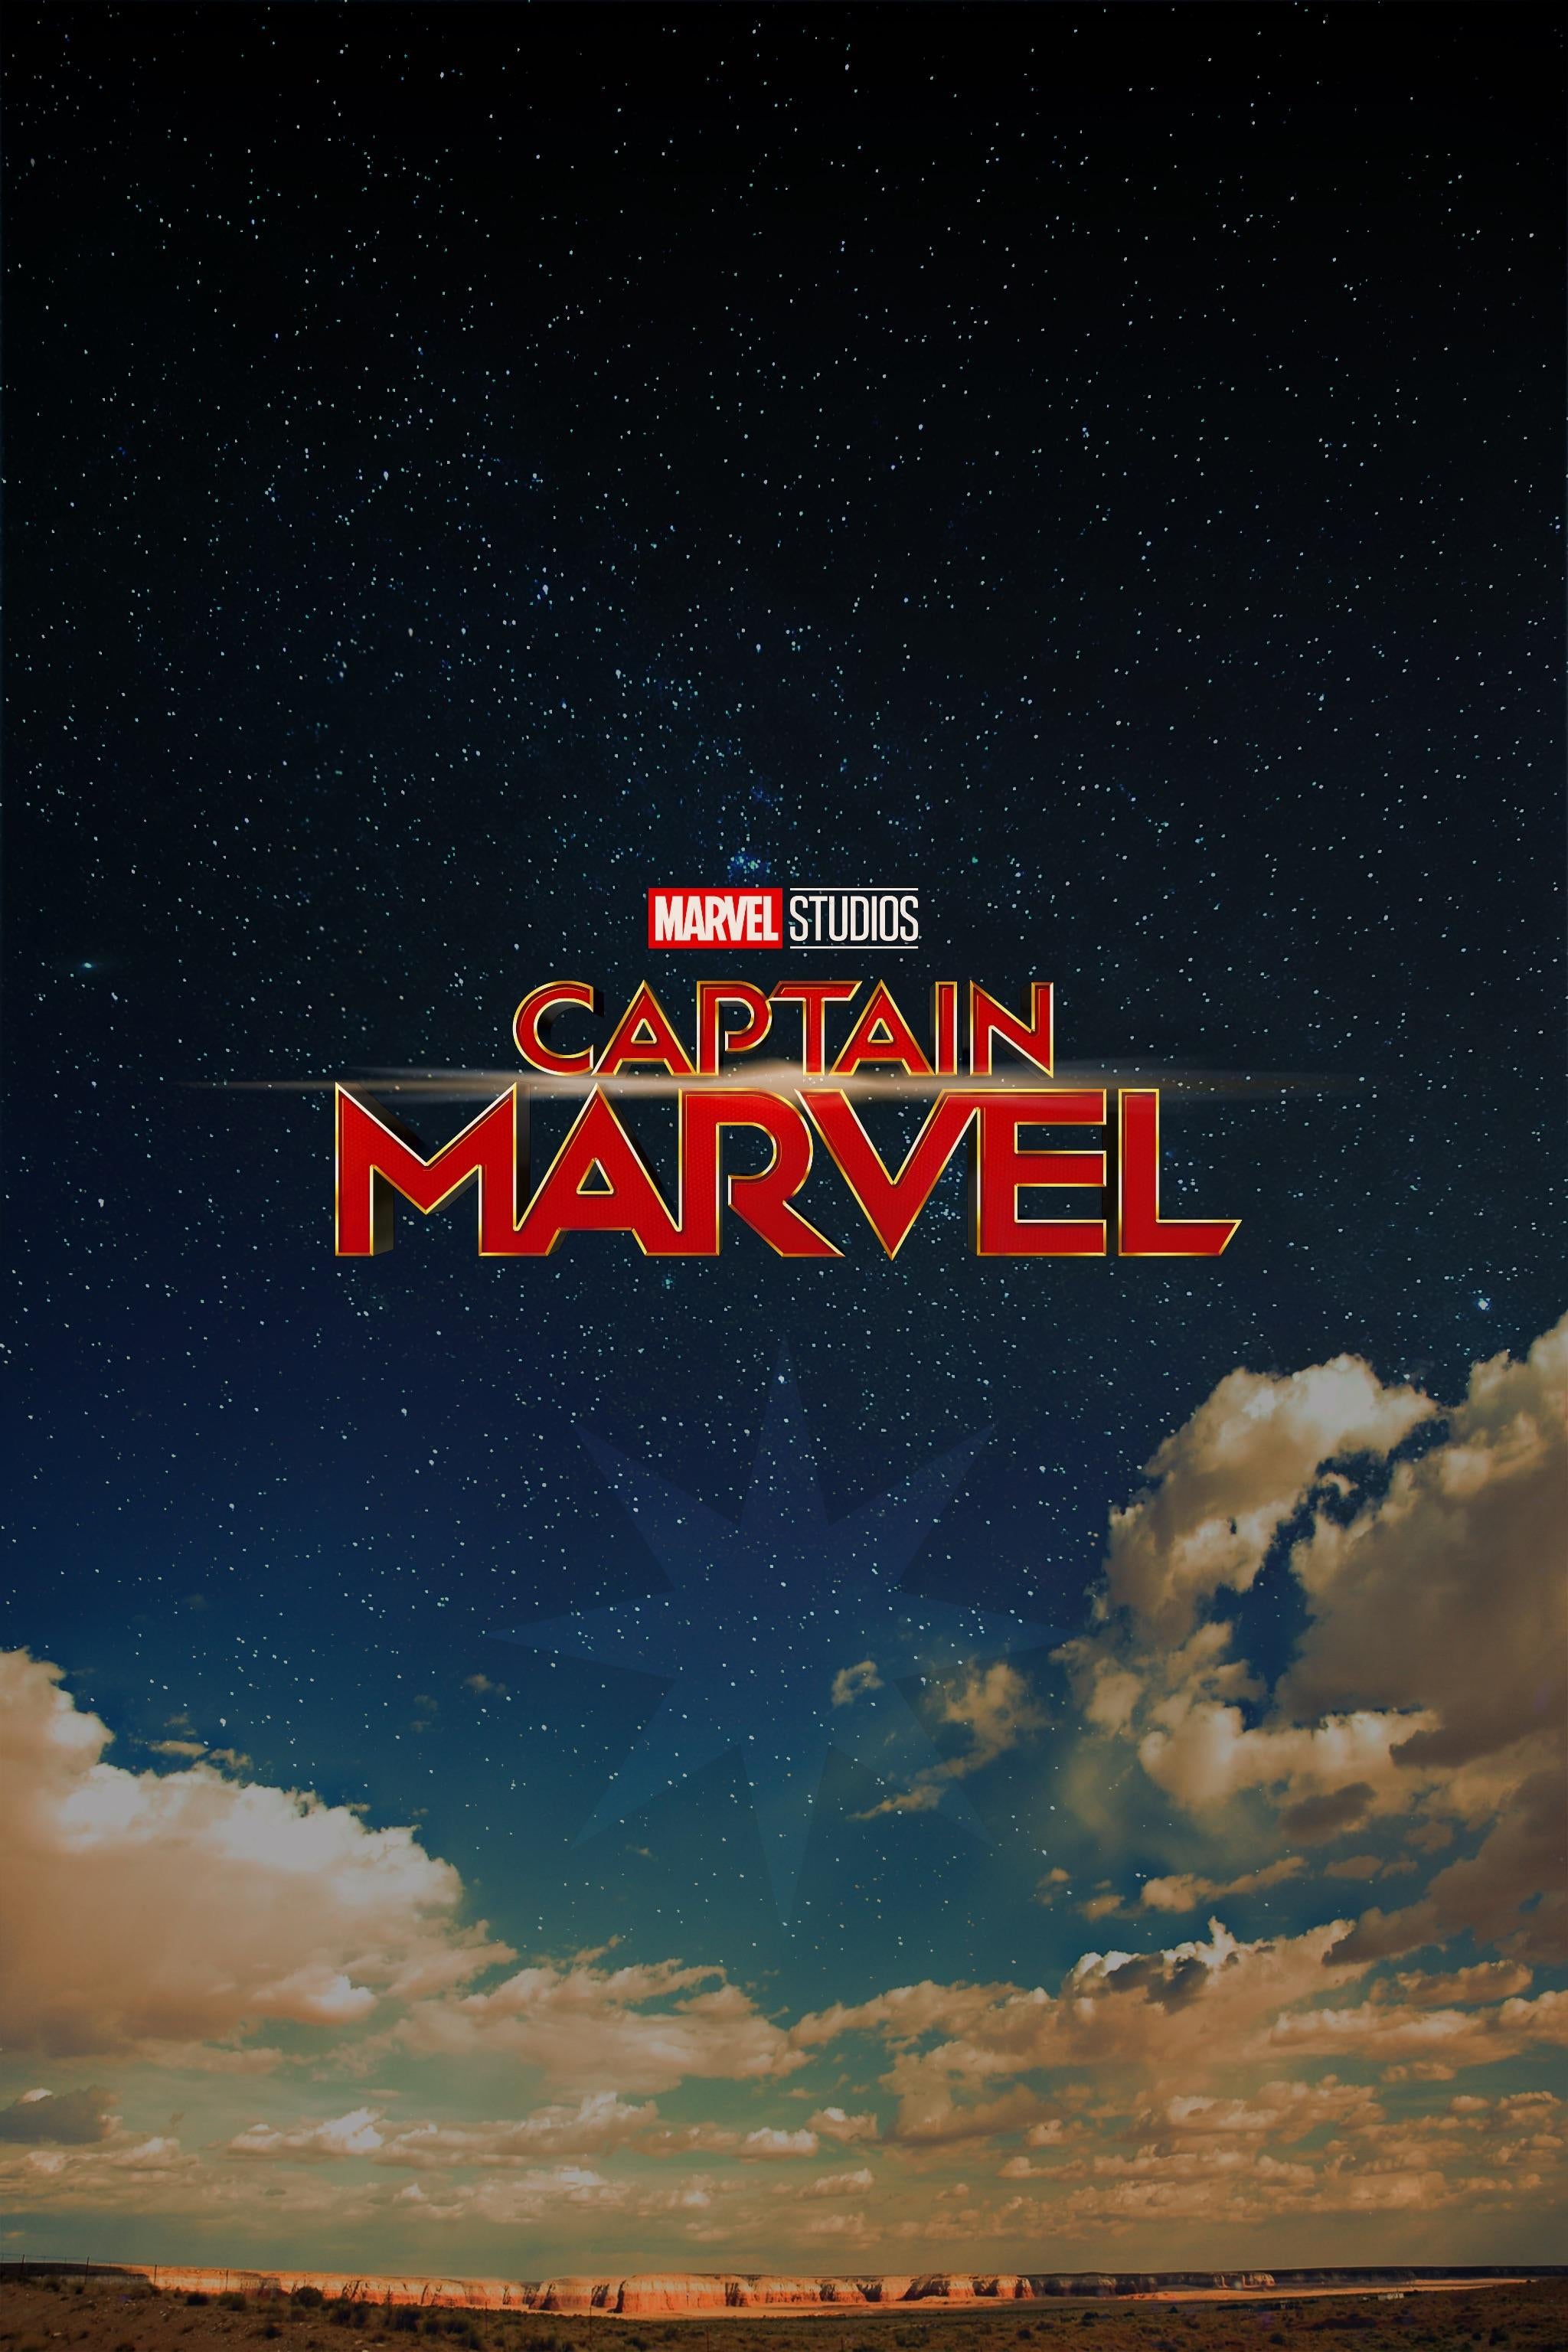 Captain Marvel Wallpaper Based on the New Poster